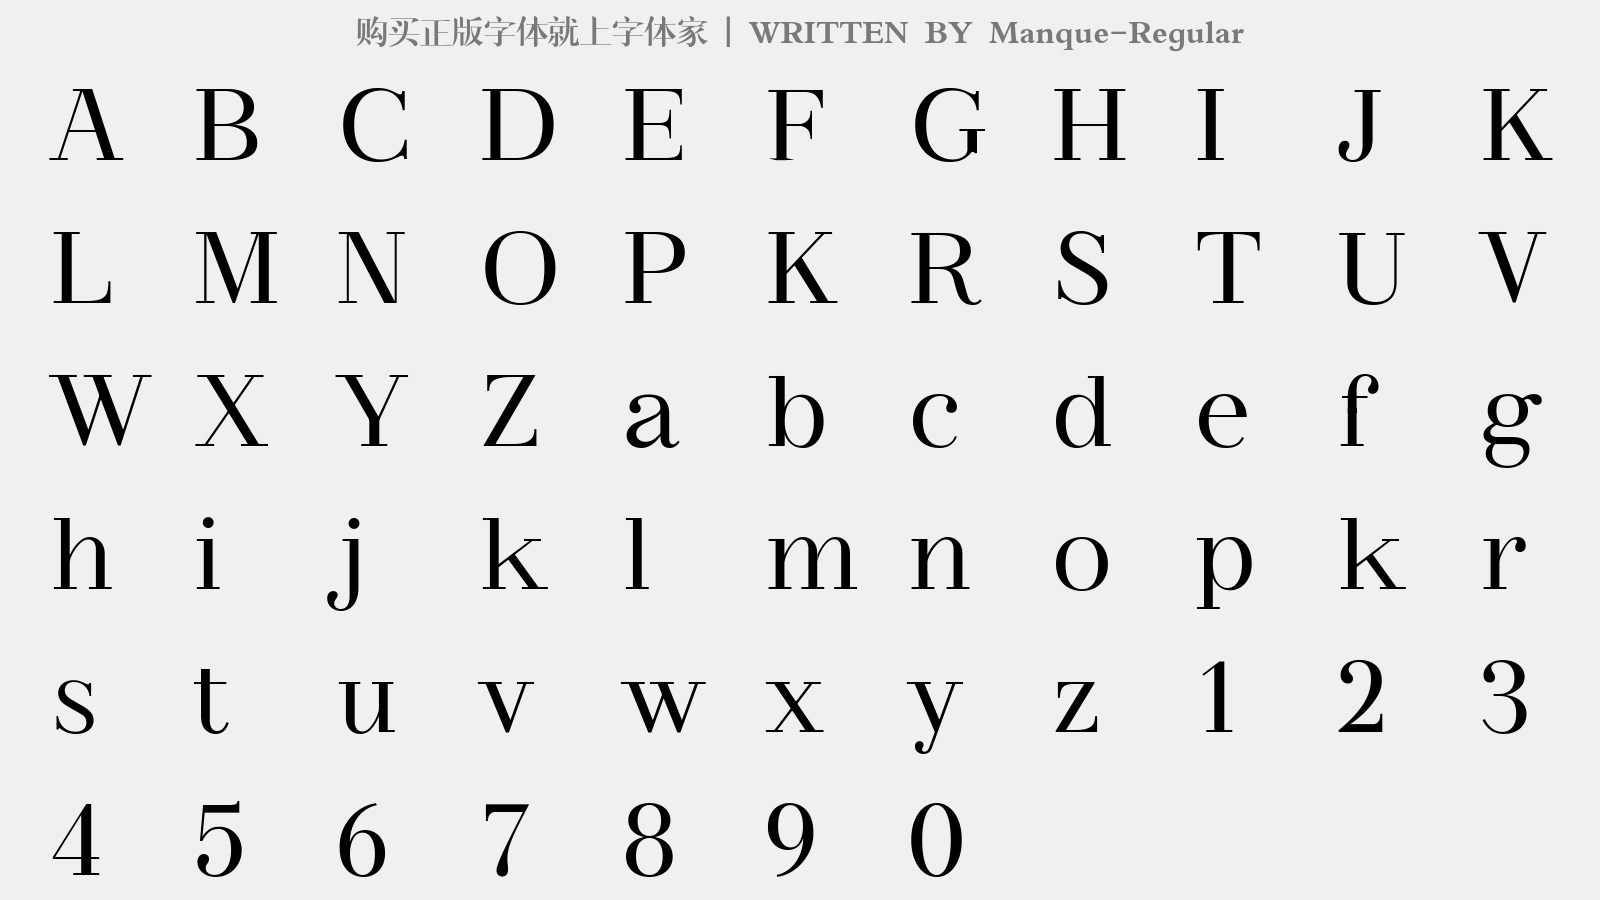 Manque-Regular - 大写字母/小写字母/数字